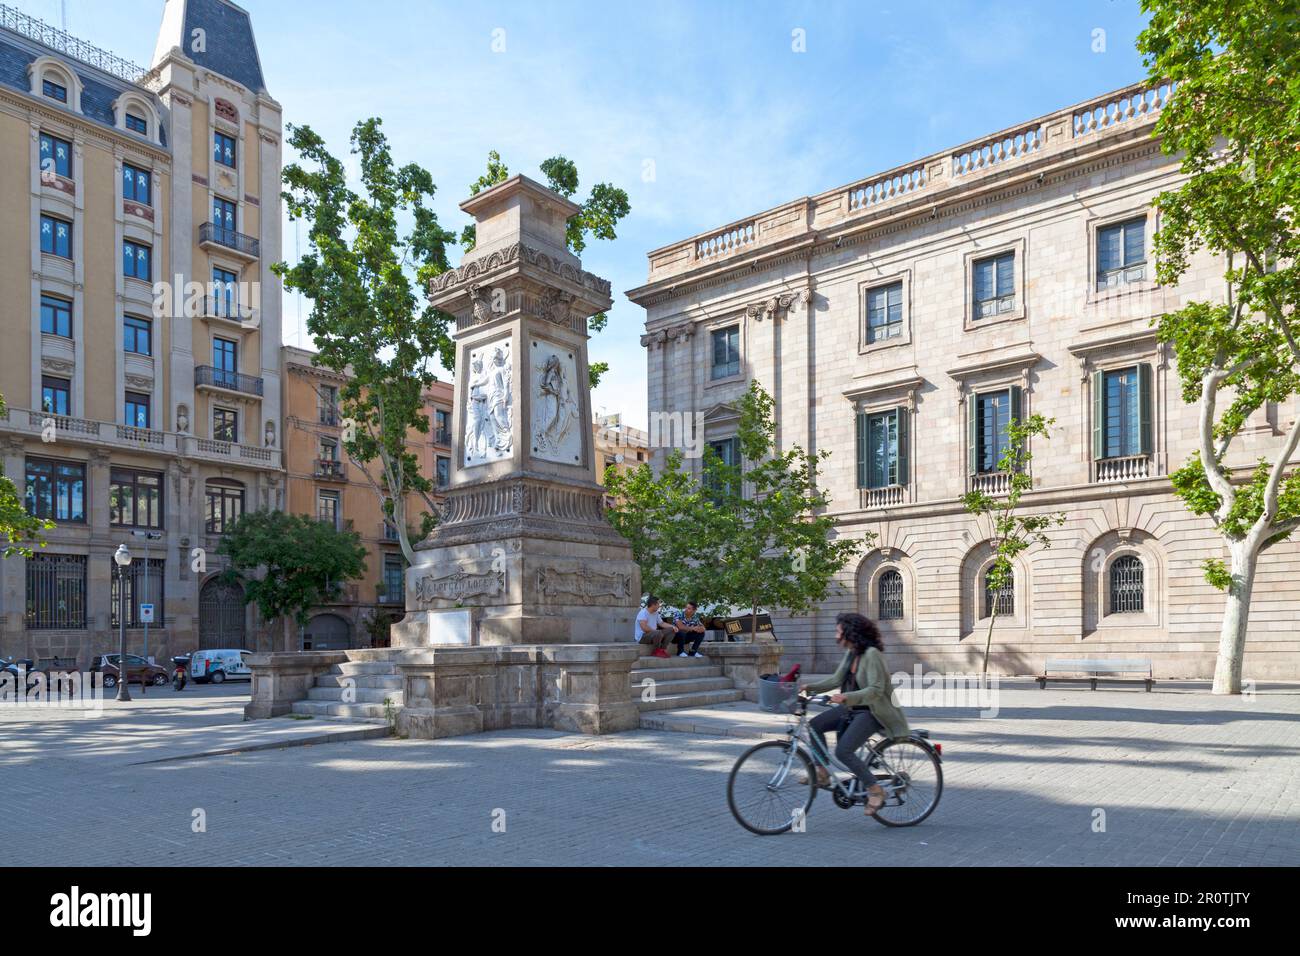 Barcelona, Spanien - Juni 08 2018: Antoni López Platz mit dem Sockel der alten Statue von Antoni López wurde einige Monate zuvor entlarvt, da er ein Fo war Stockfoto